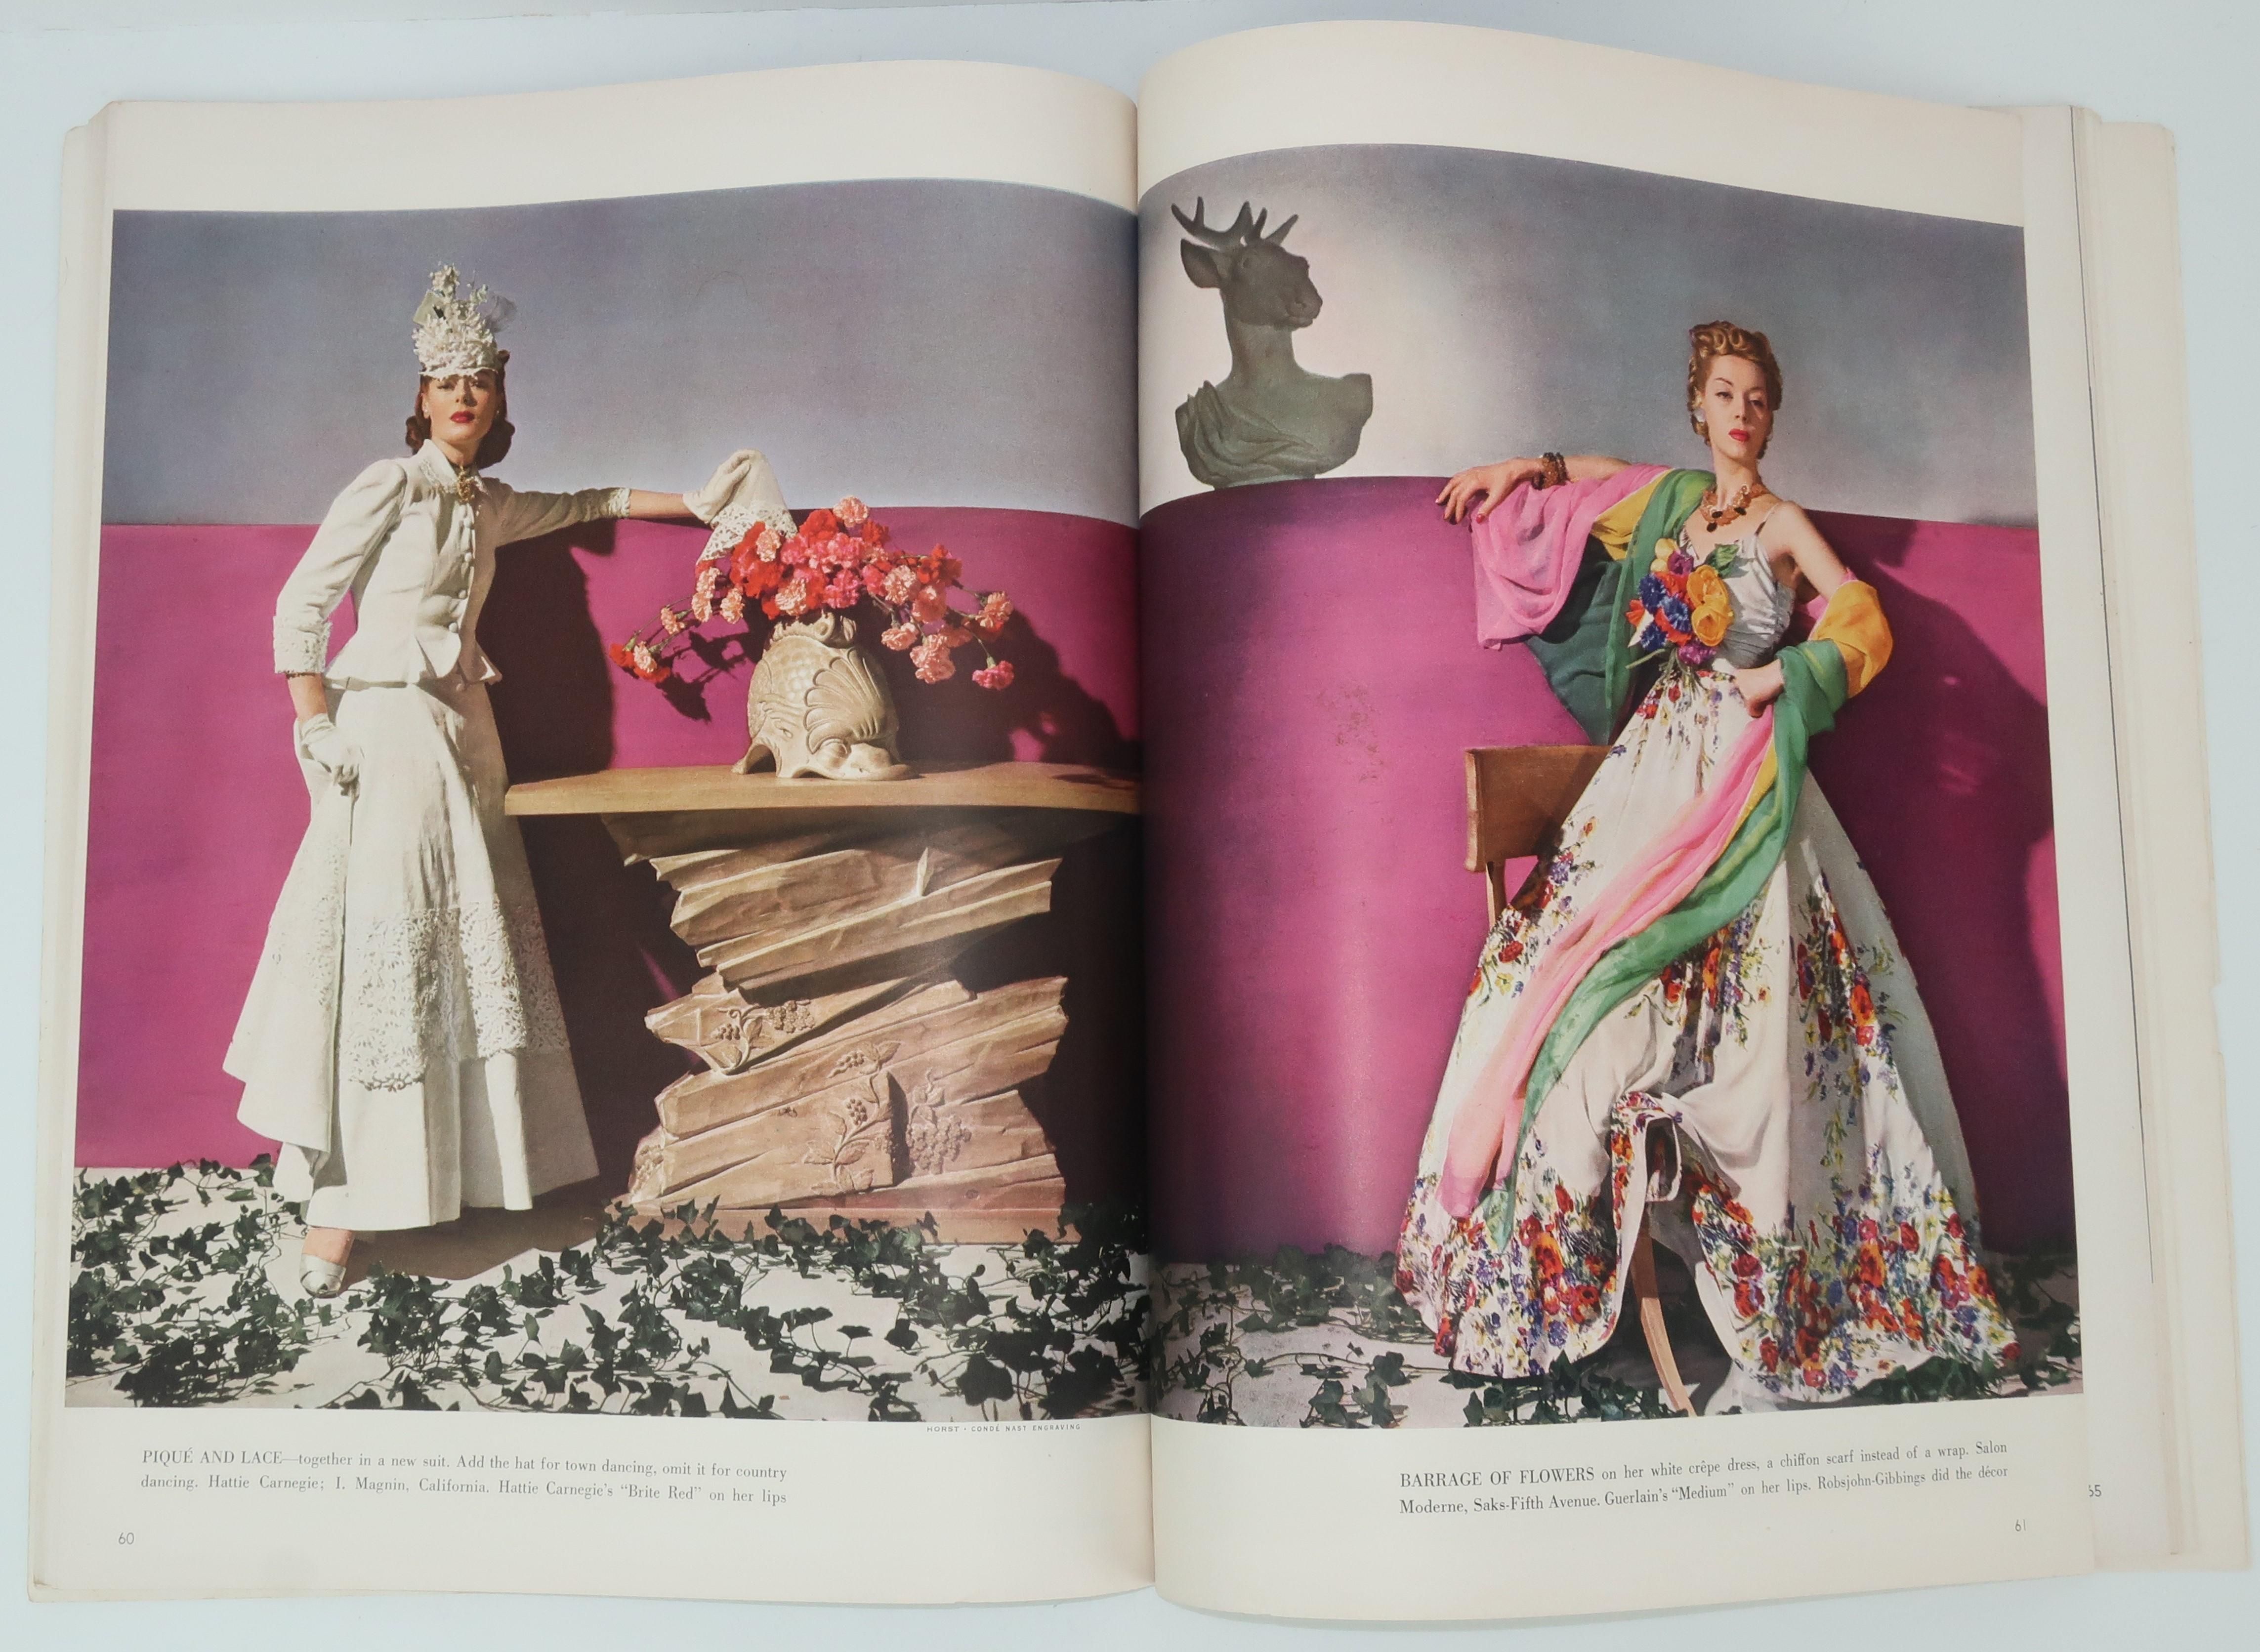 1939 Vogue Magazine With Salvador Dali Cover Art 6